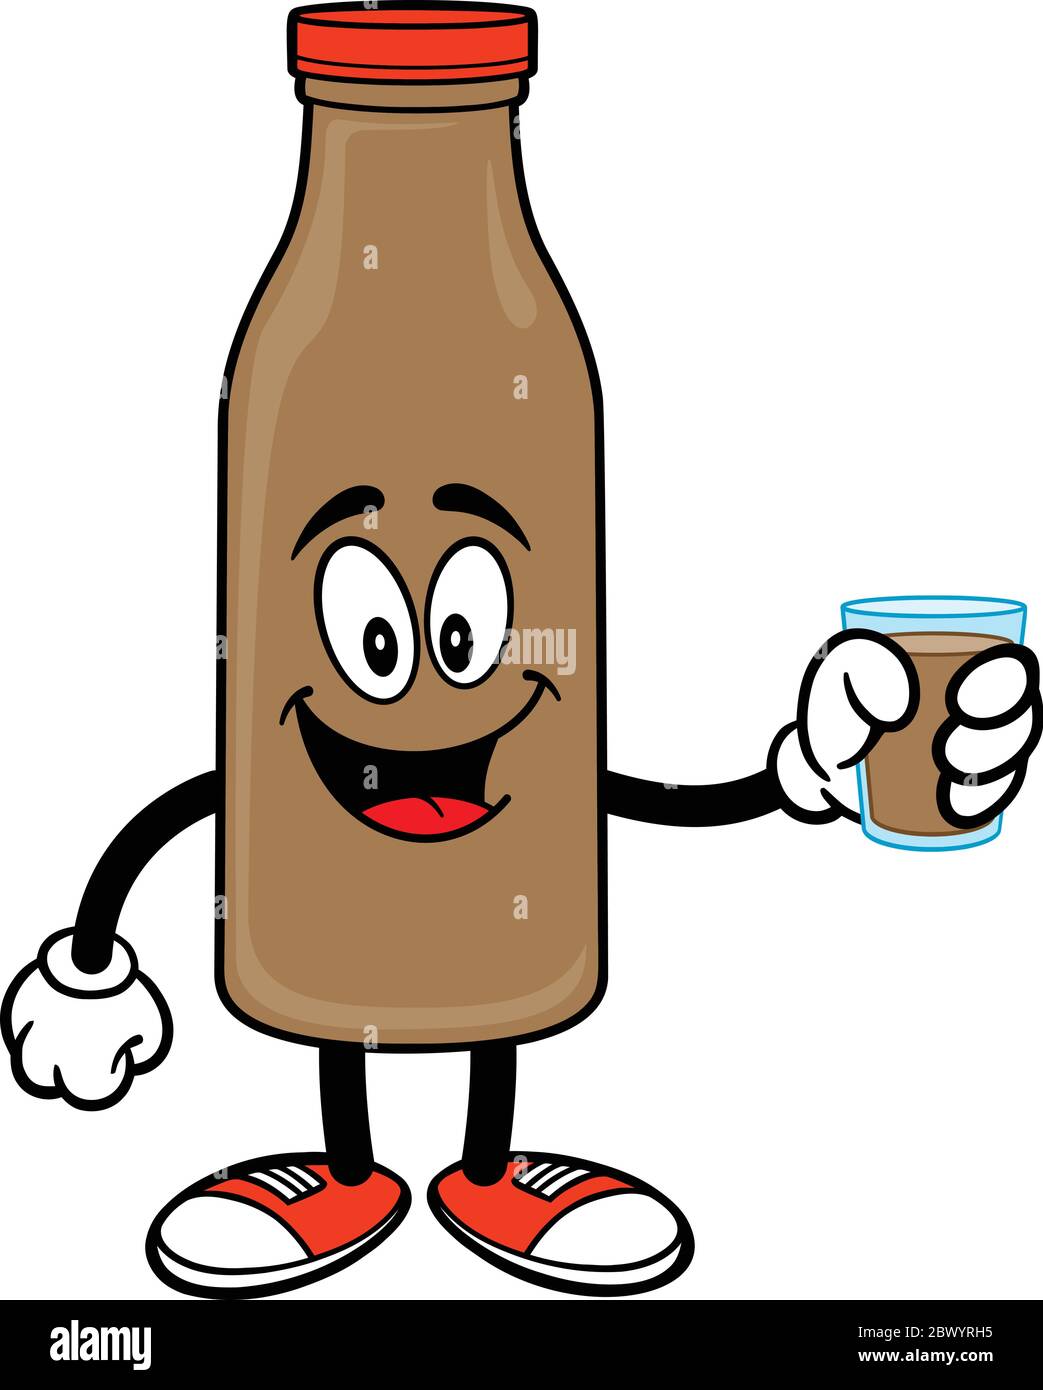 Mascota de leche de chocolate con vaso de leche de chocolate - una  ilustración de dibujos animados de una mascota de leche de chocolate con un  vaso de leche de chocolate Imagen